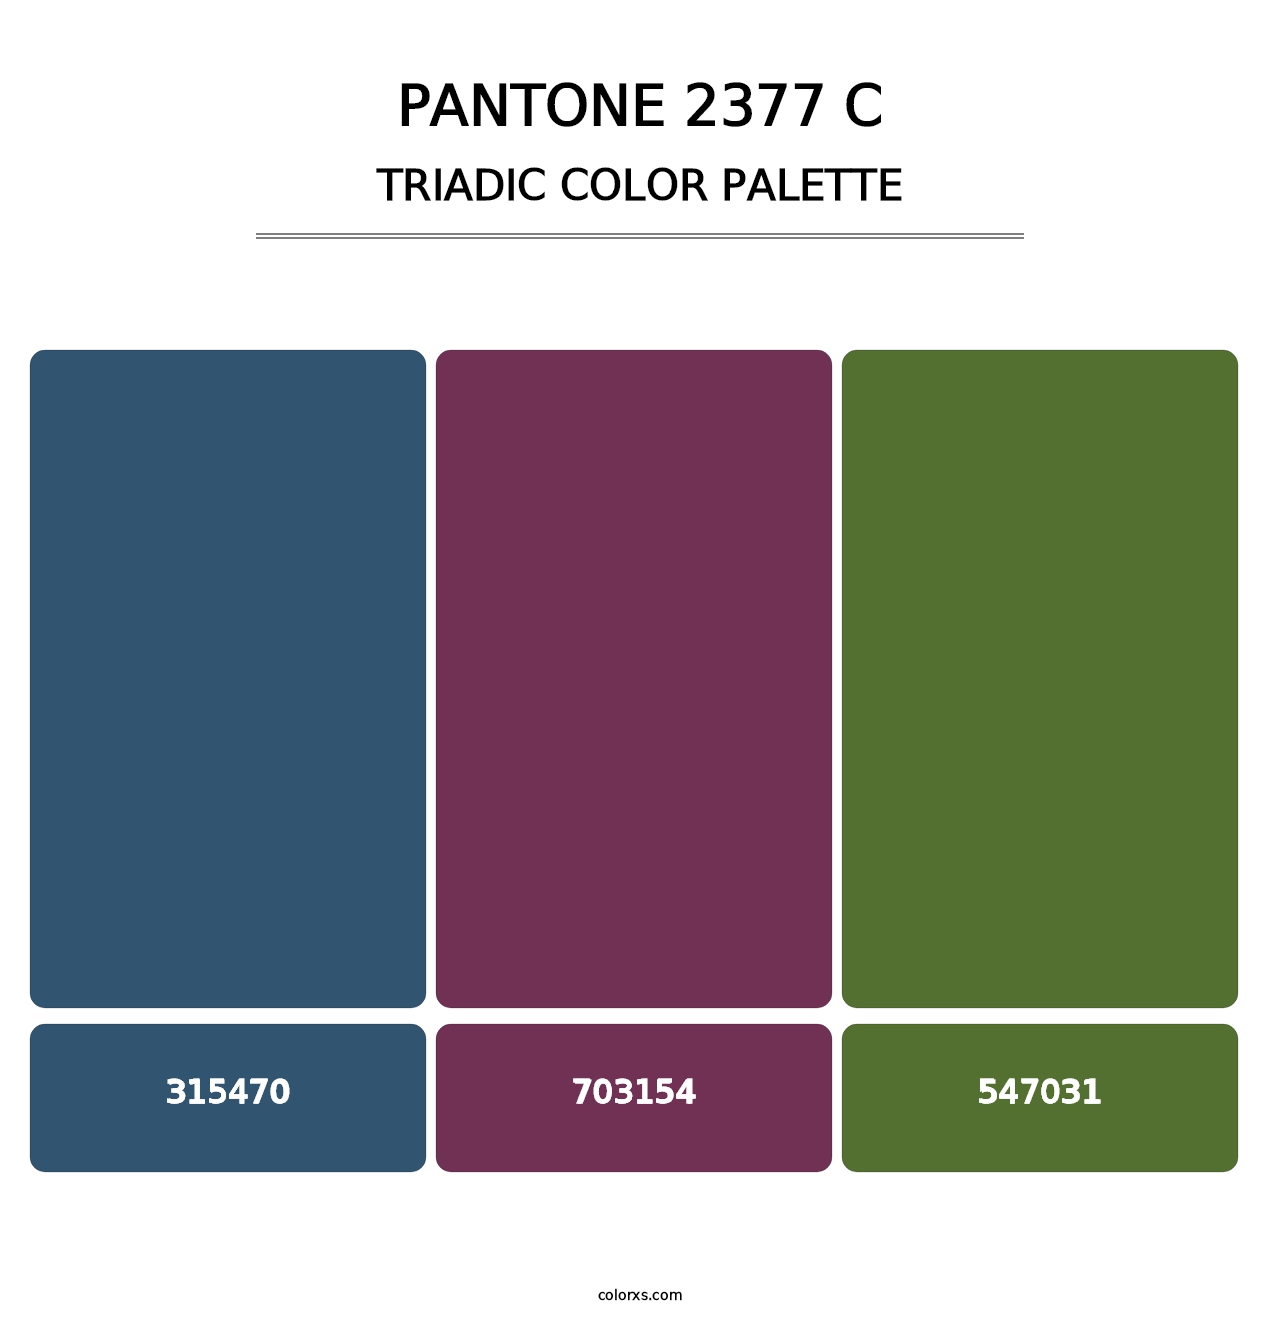 PANTONE 2377 C - Triadic Color Palette